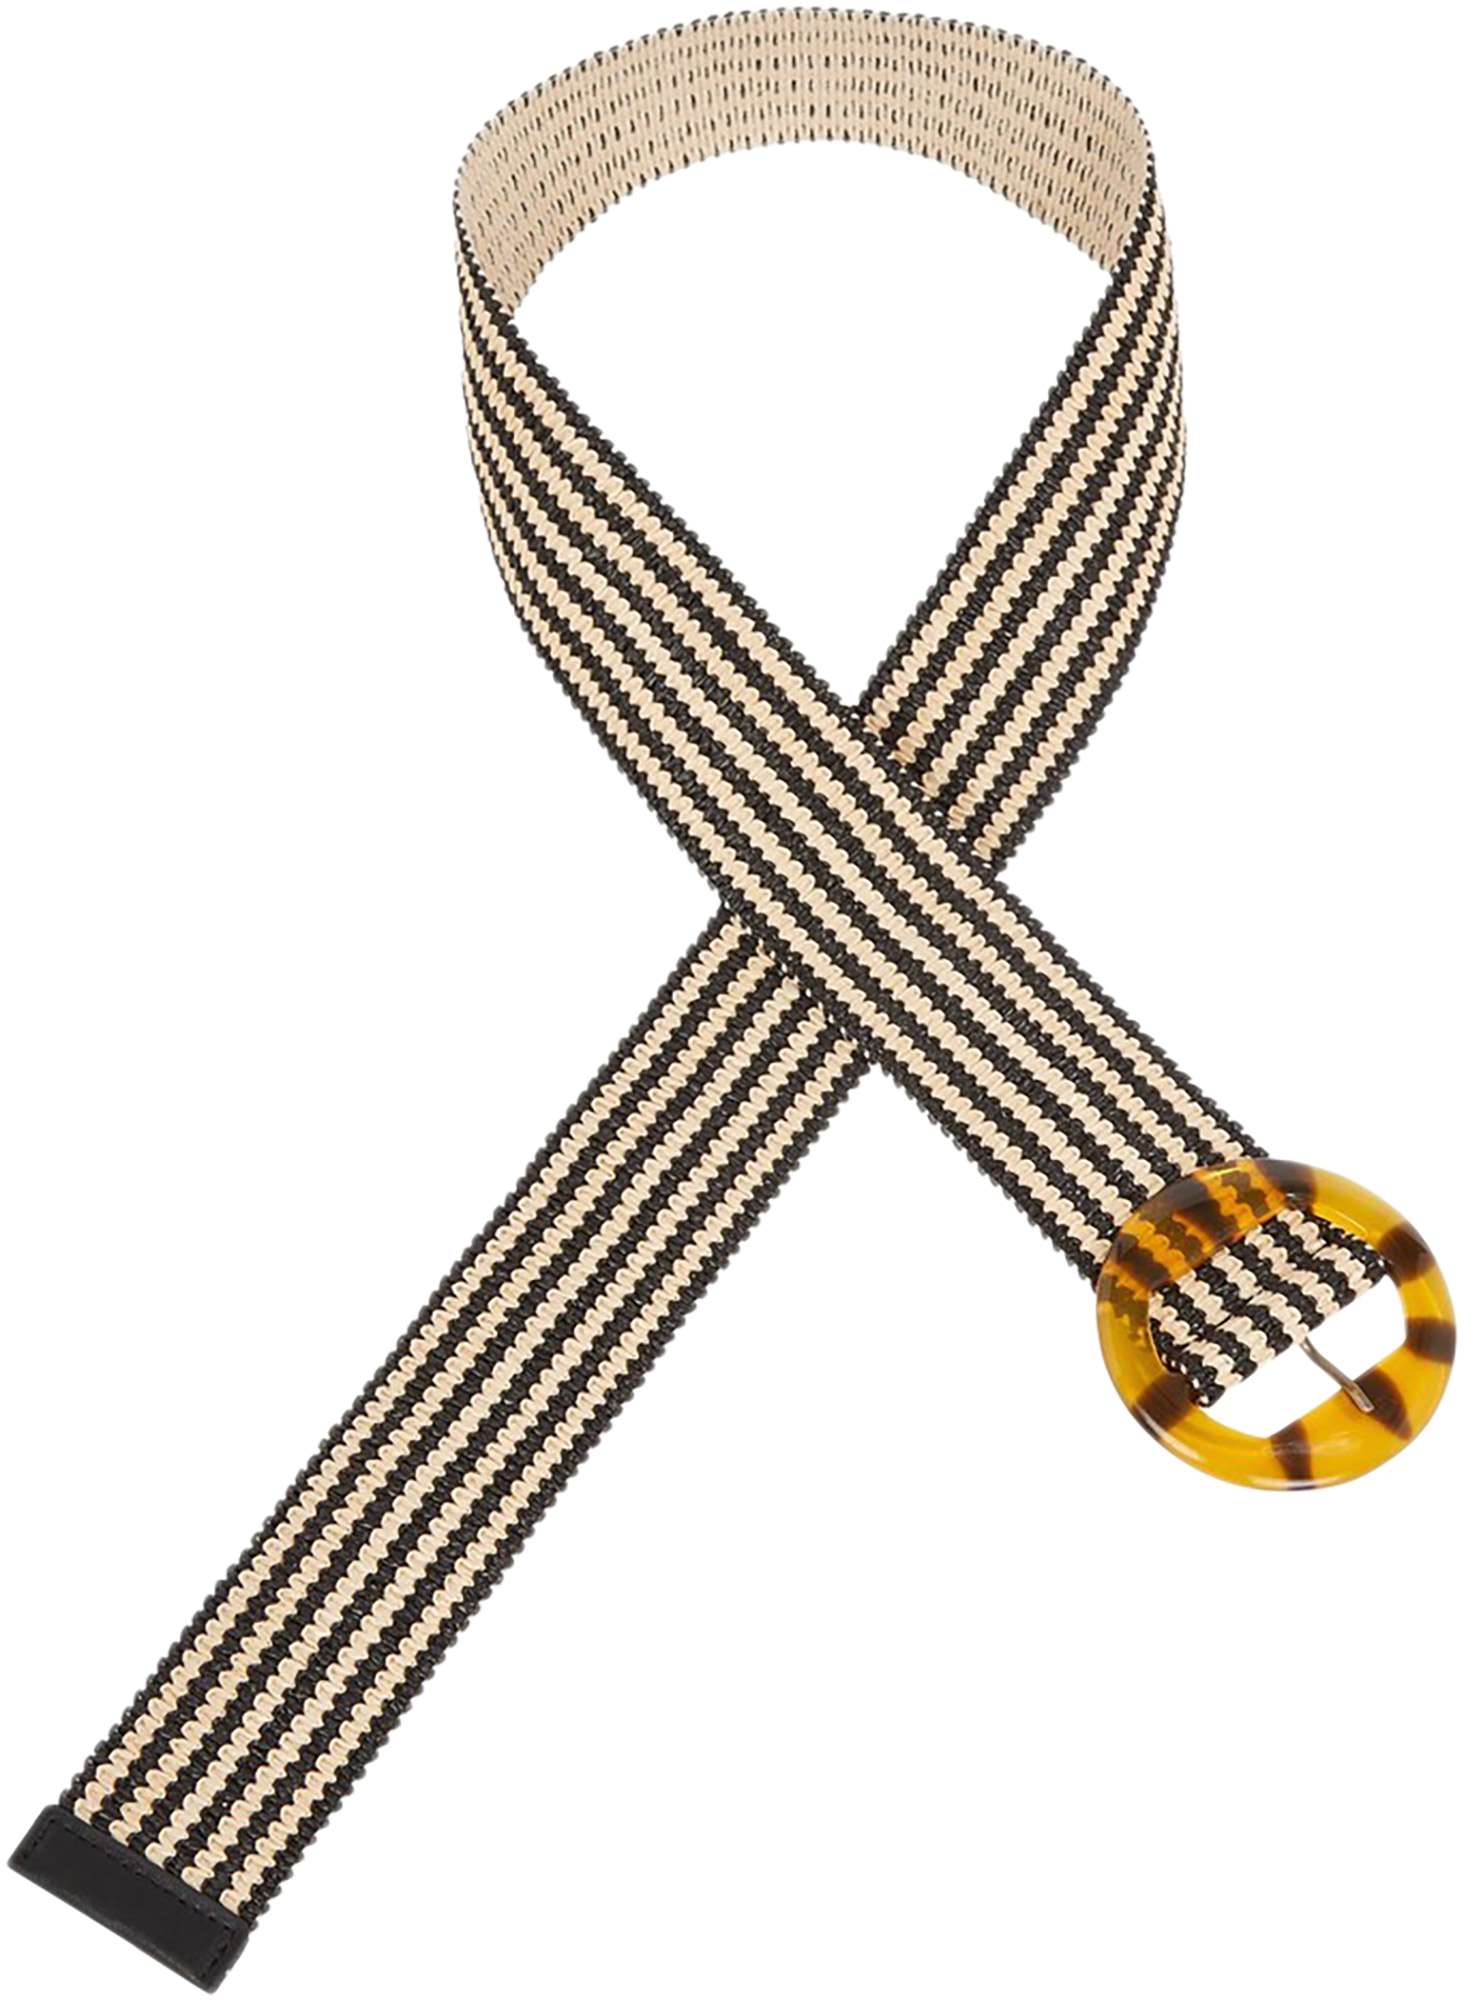 Afbeelding van King Louie Striped belt black& off white